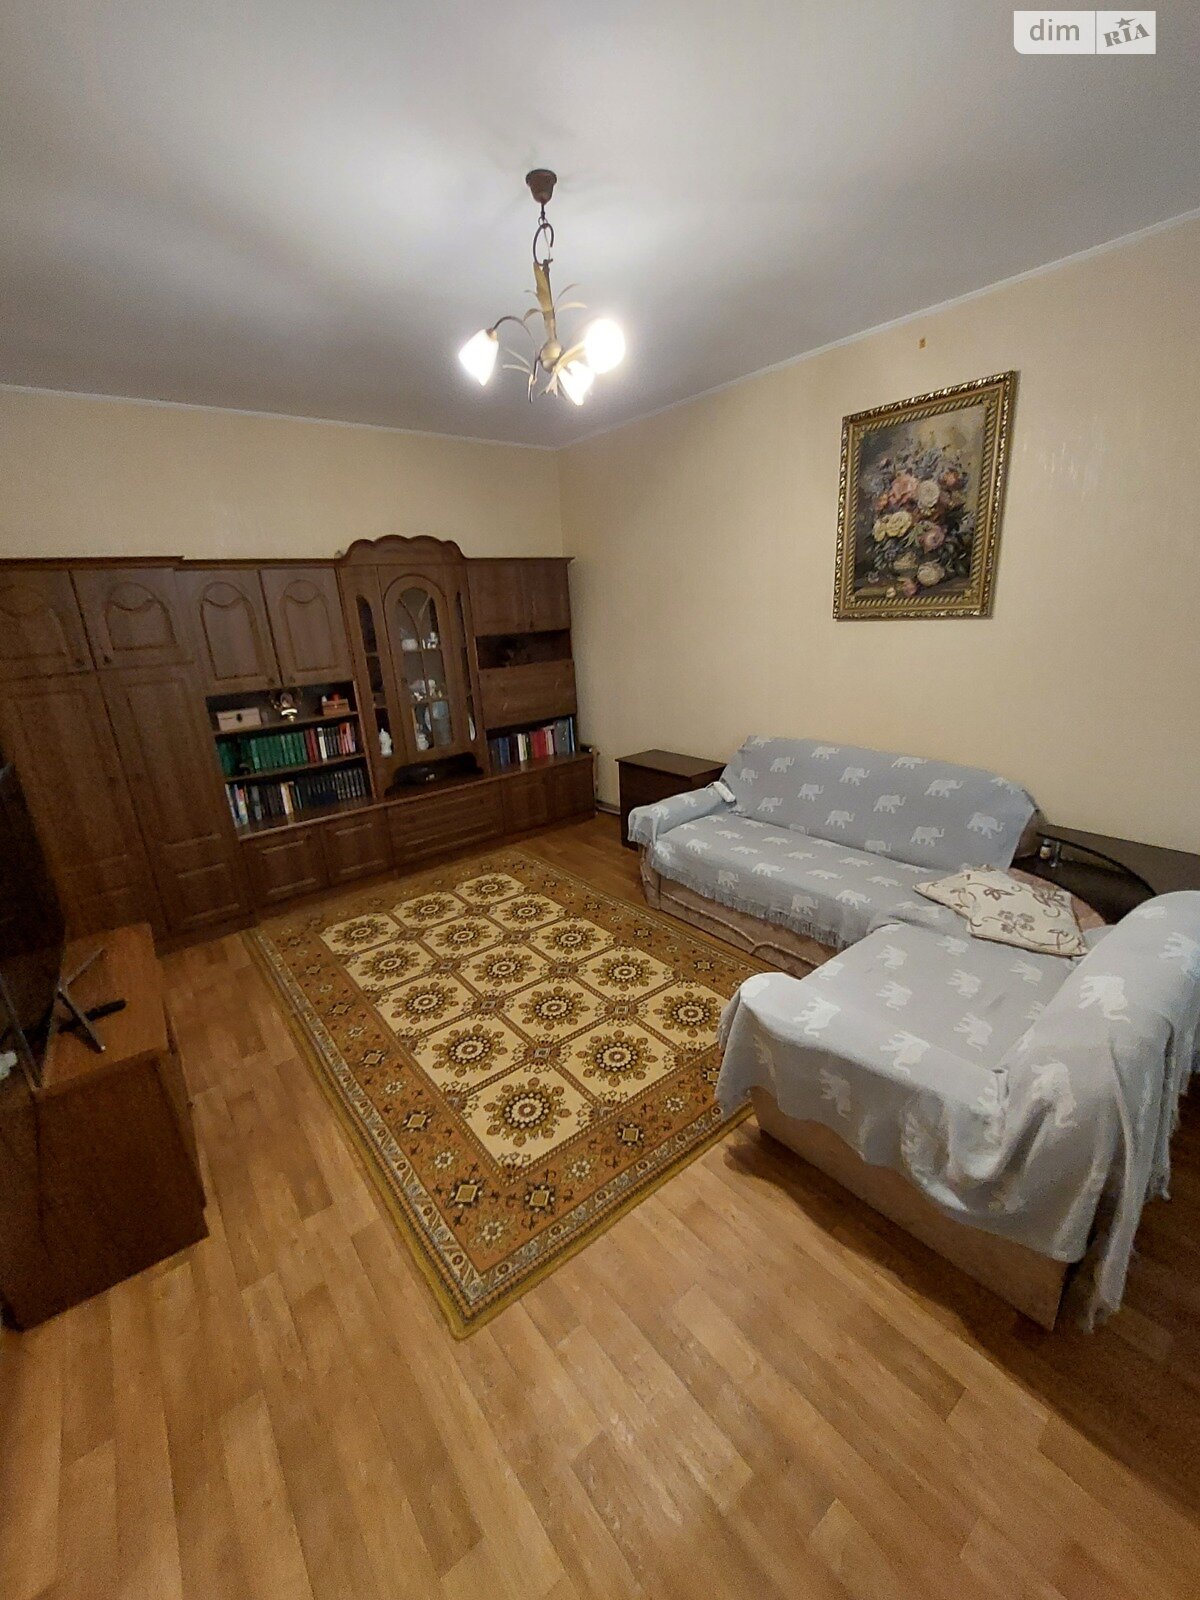 Продажа части дома в Николаеве, район Заводской, 3 комнаты фото 1